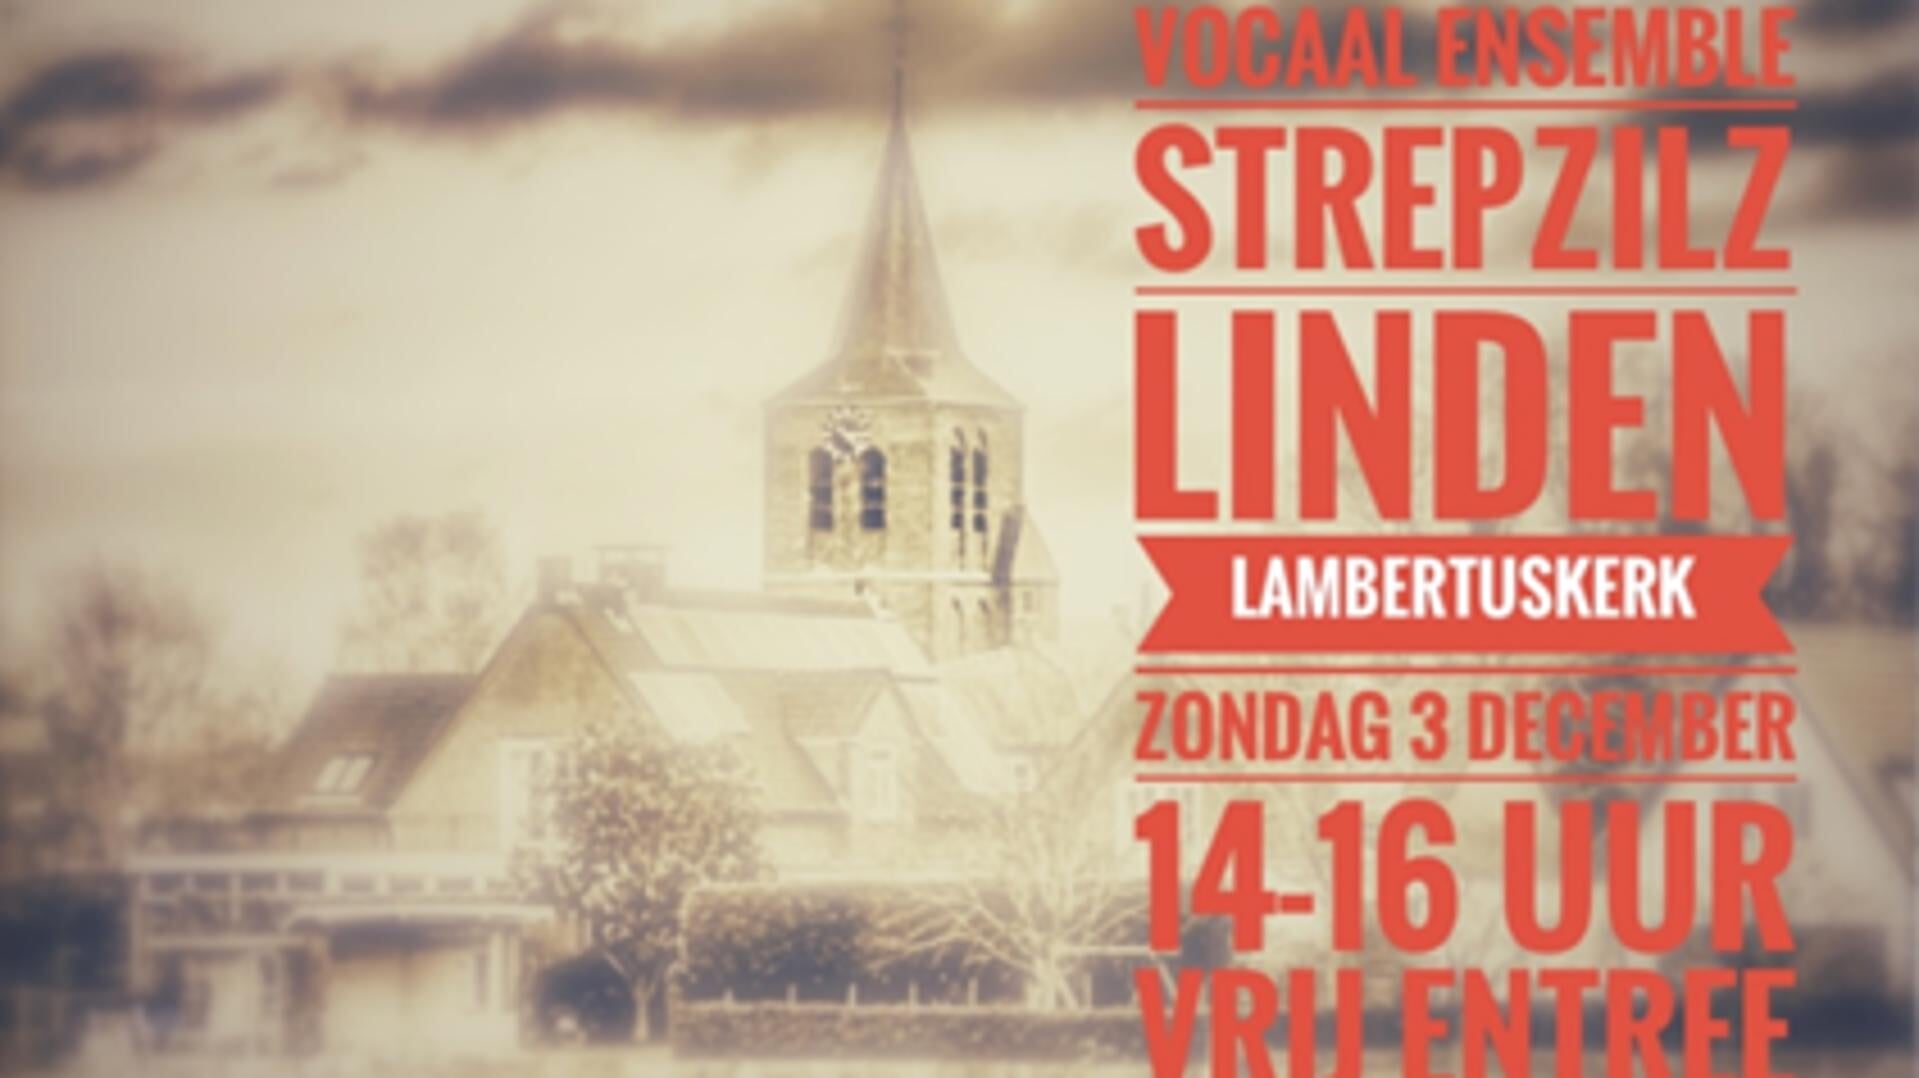 In het oude Lambertuskerkje in Linden klinkt op zondagmiddag 3 december prachtige a capella zang van het vocaal vijftal ‘De Strepzilz’.